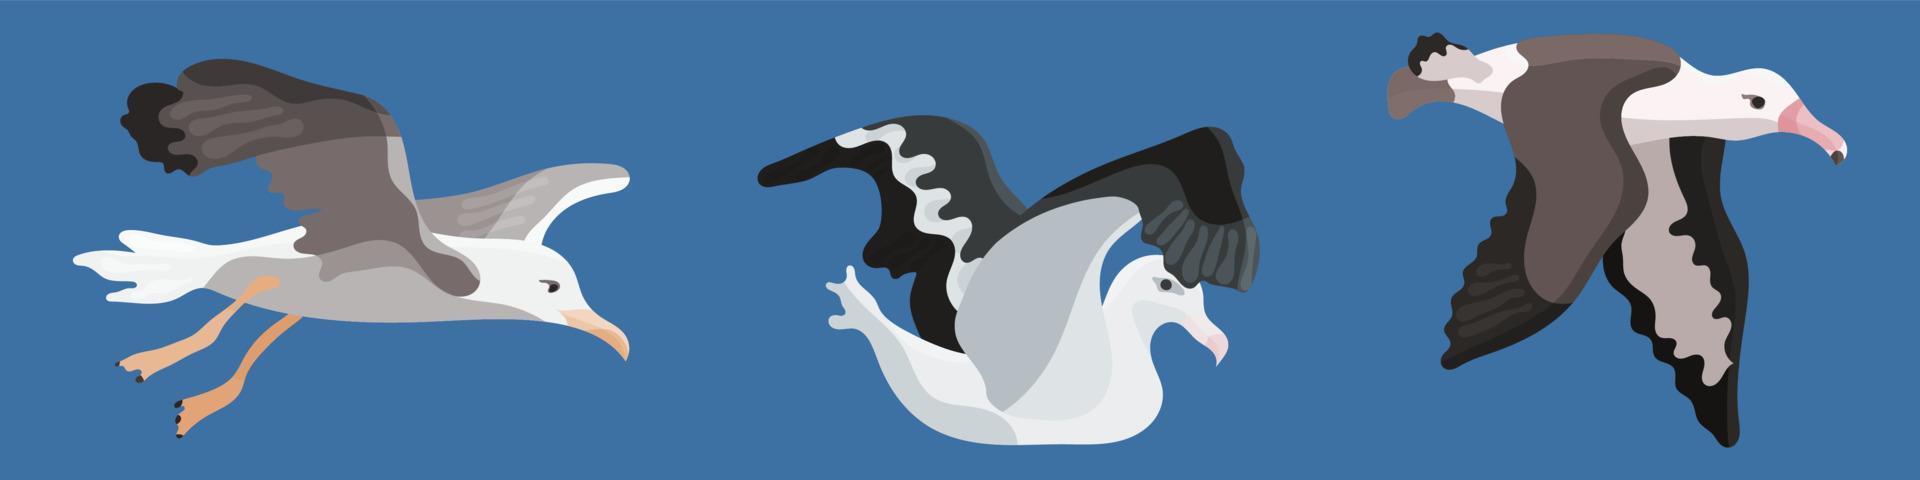 colección de dibujos animados de estilo plano de albatros de pájaro vector